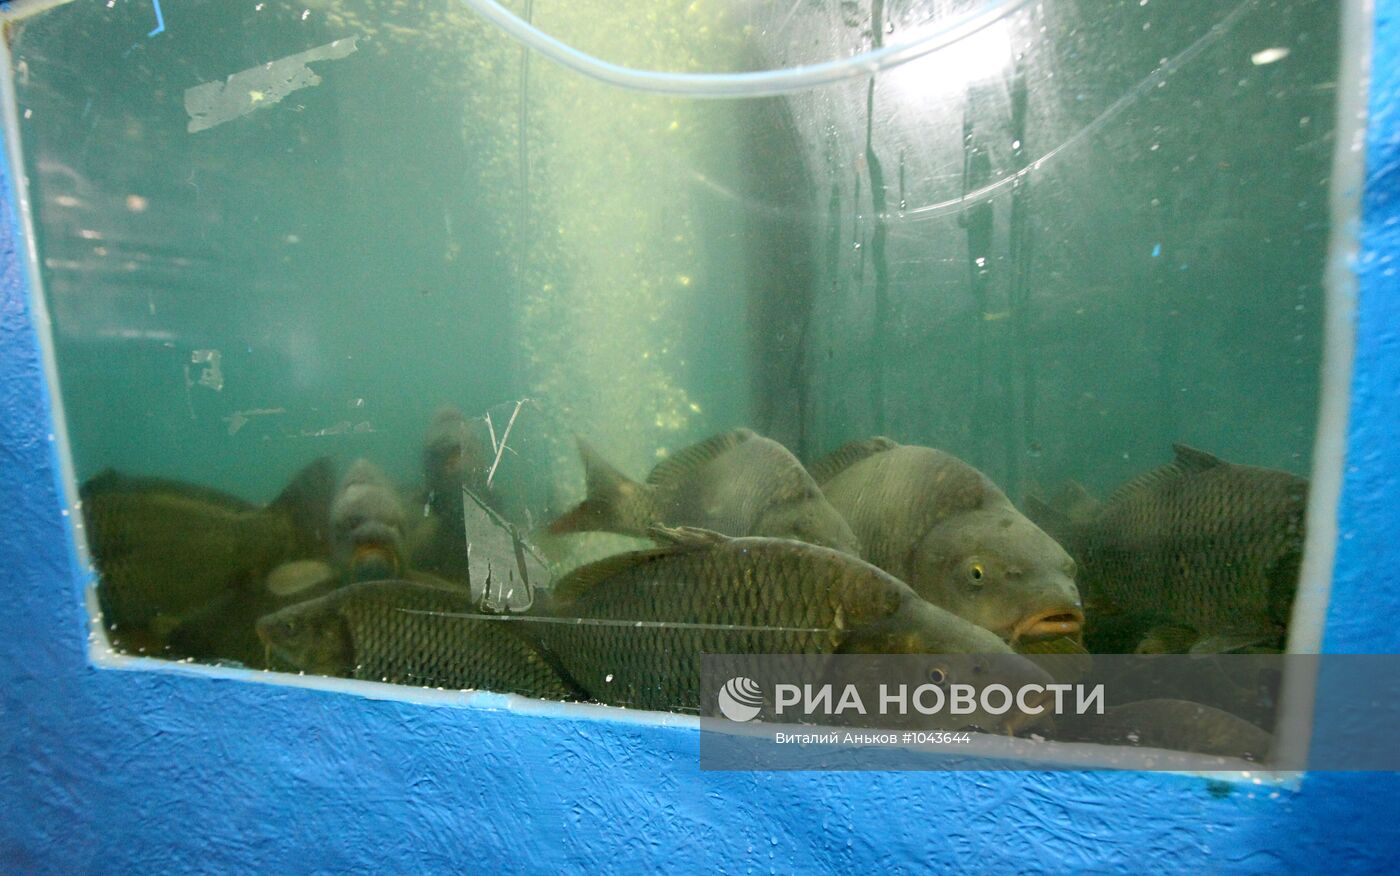 Строительство "Приморского океанариума" на острове Русский